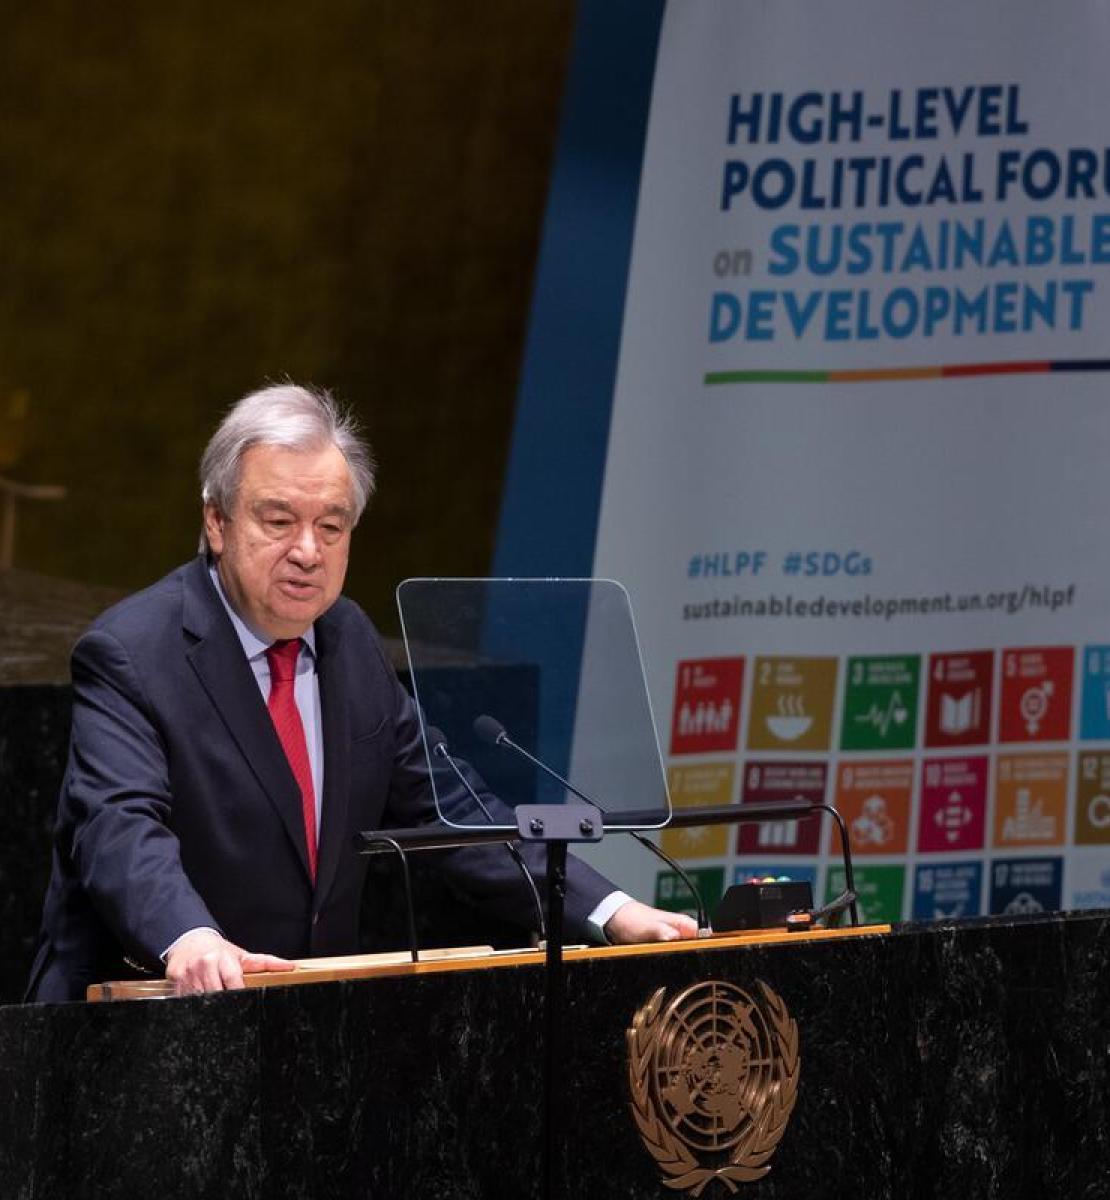 Генеральный секретарь ООН выступает на открытии политического форума высокого уровня по устойчивому развитию